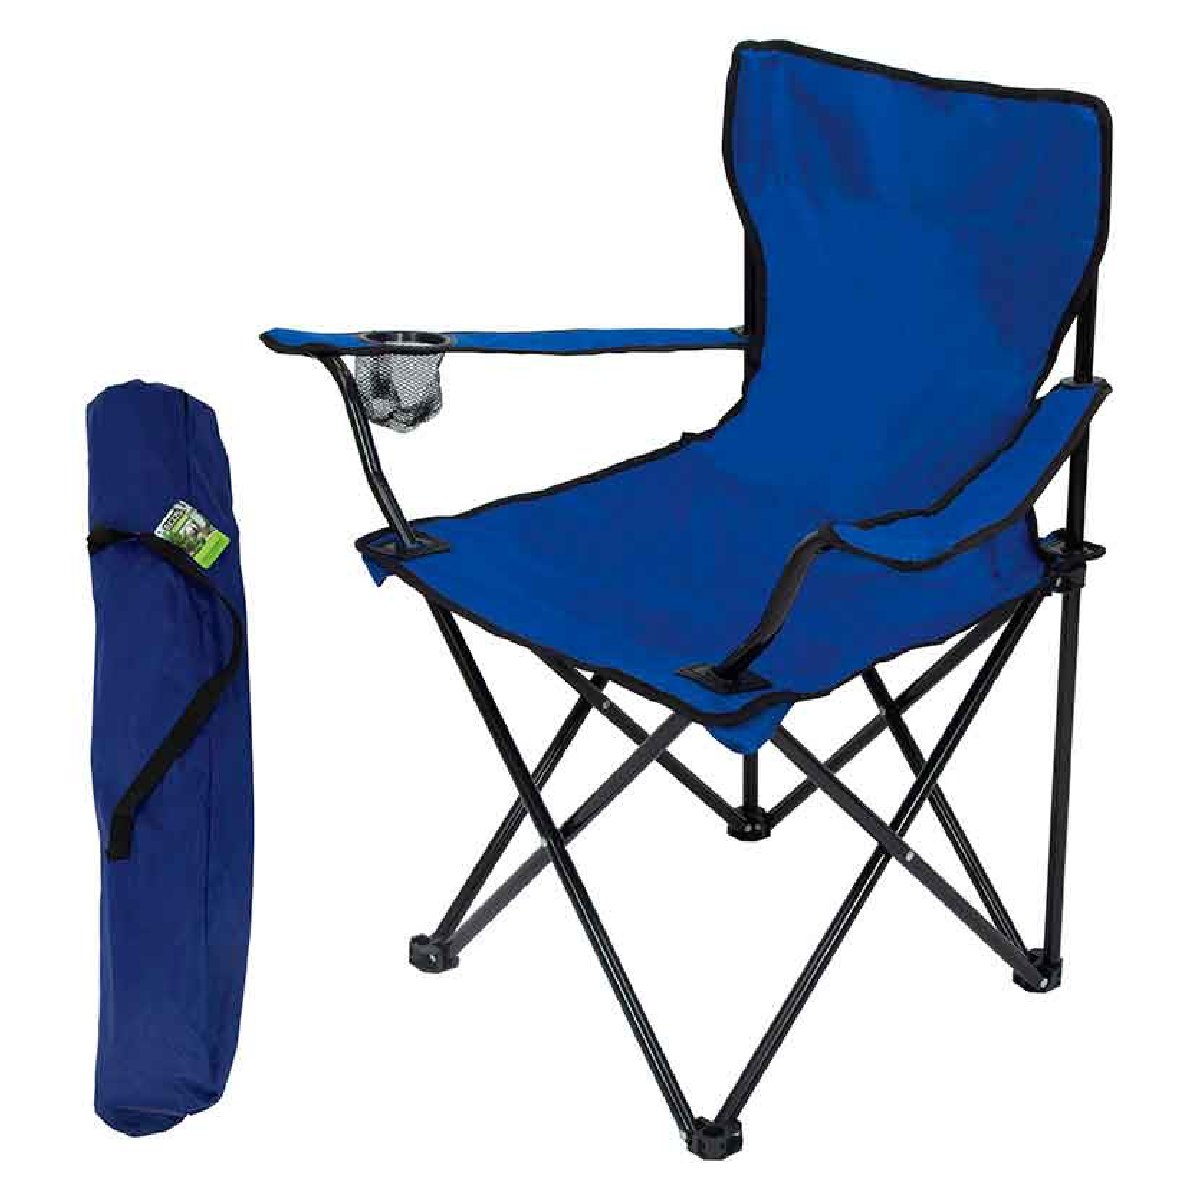 Кресло складное DW-2009H с подлокотниками подстаканниками (синее)Купить